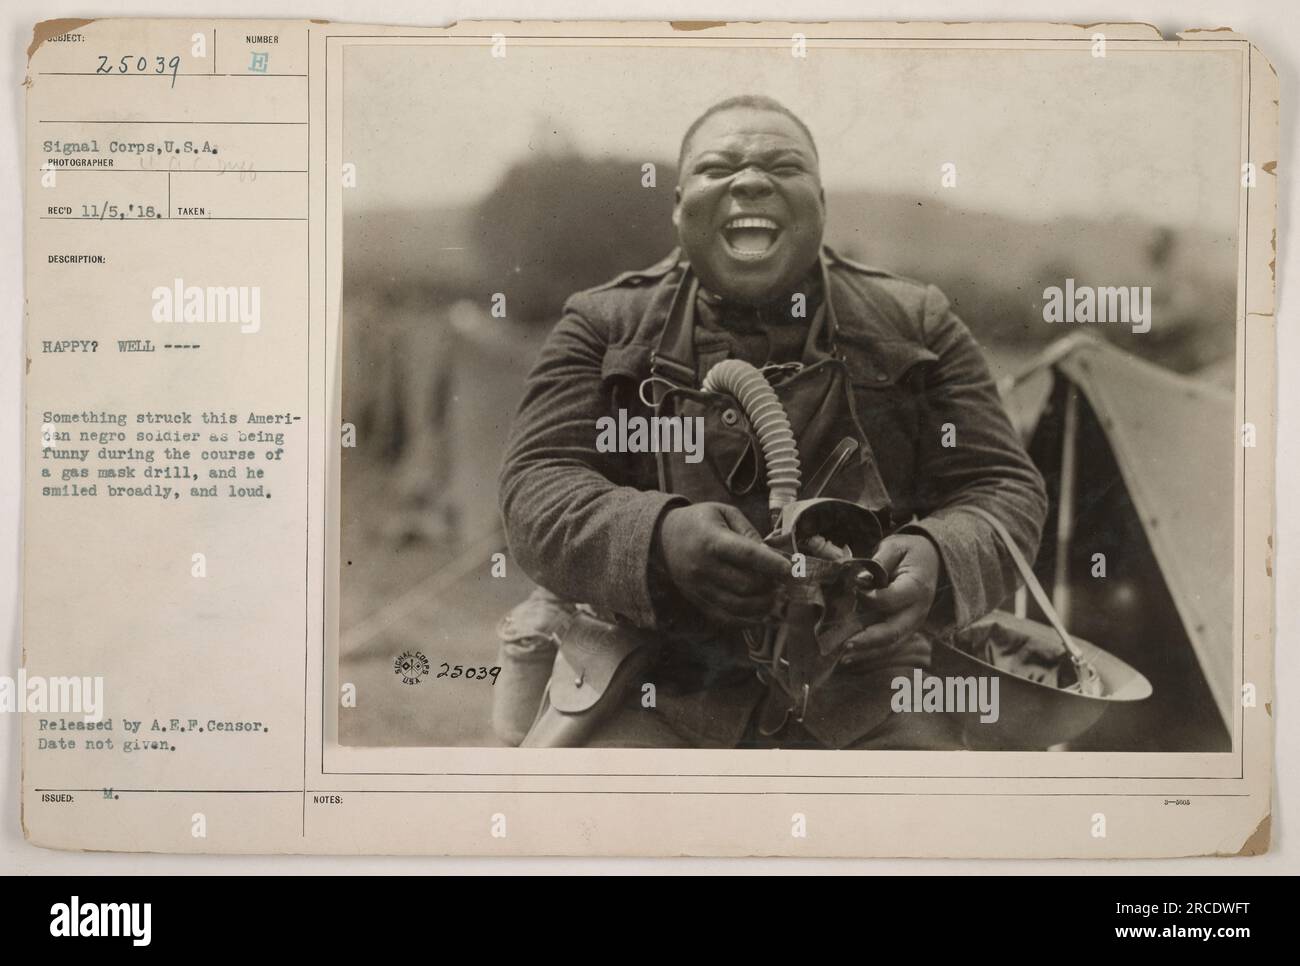 Soldat afro-américain souriant pendant un exercice avec masque à gaz. Le soldat trouva quelque chose d'amusant et ne put s'empêcher de sourire. Photographie prise par le photographe de signal corps, date inconnue. Publié par A.E.P. Censor. Numéro d'image : 25039.' Banque D'Images